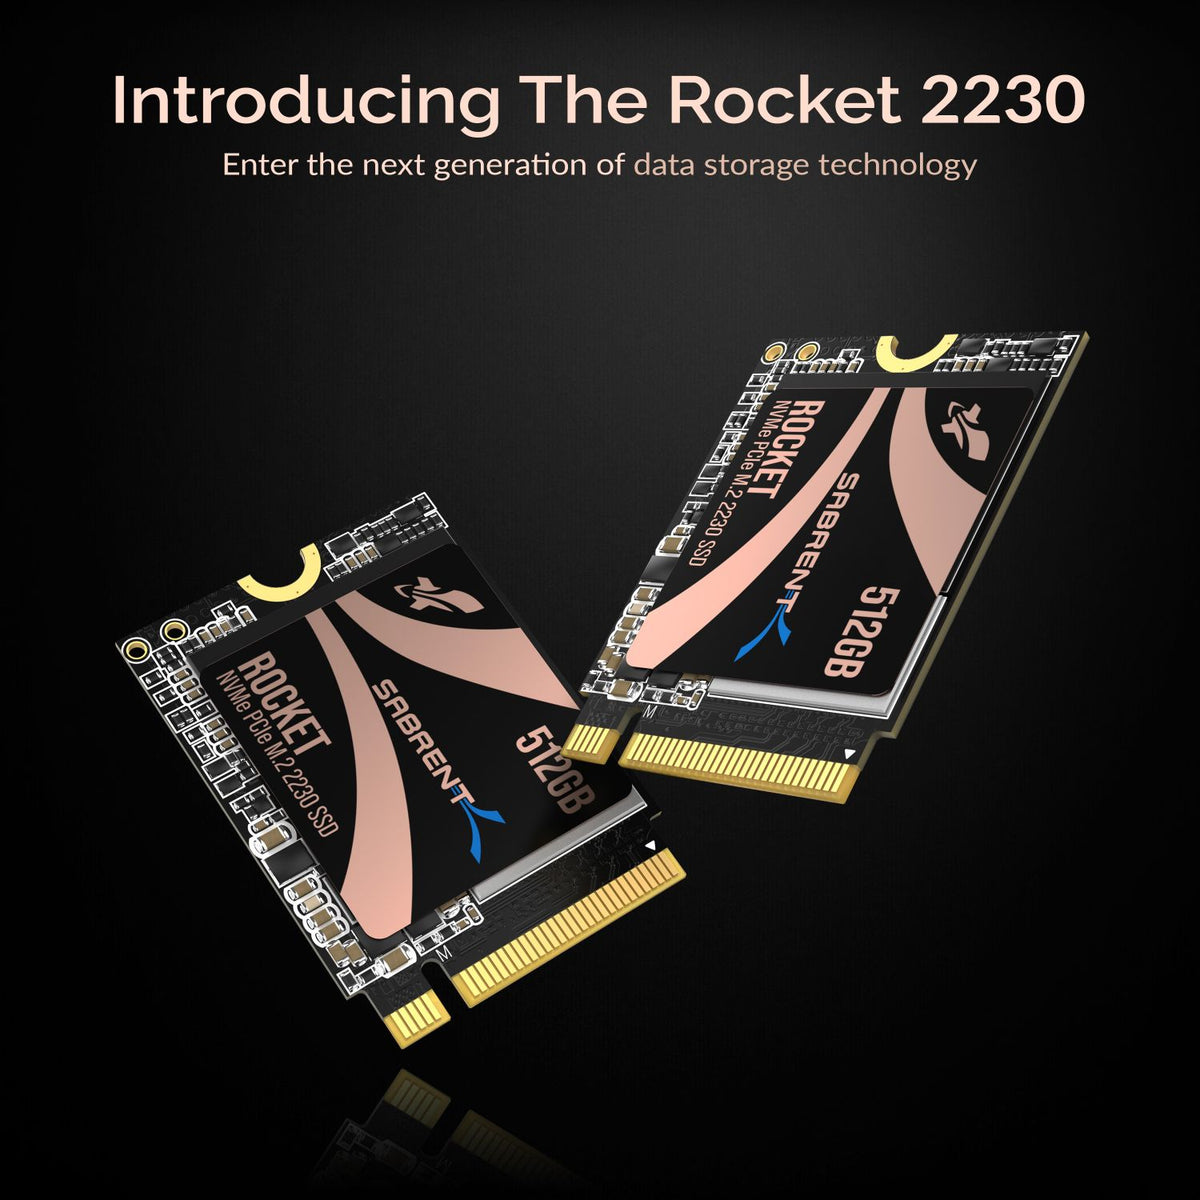 Rocket 2230 NVMe 4.0 512GB